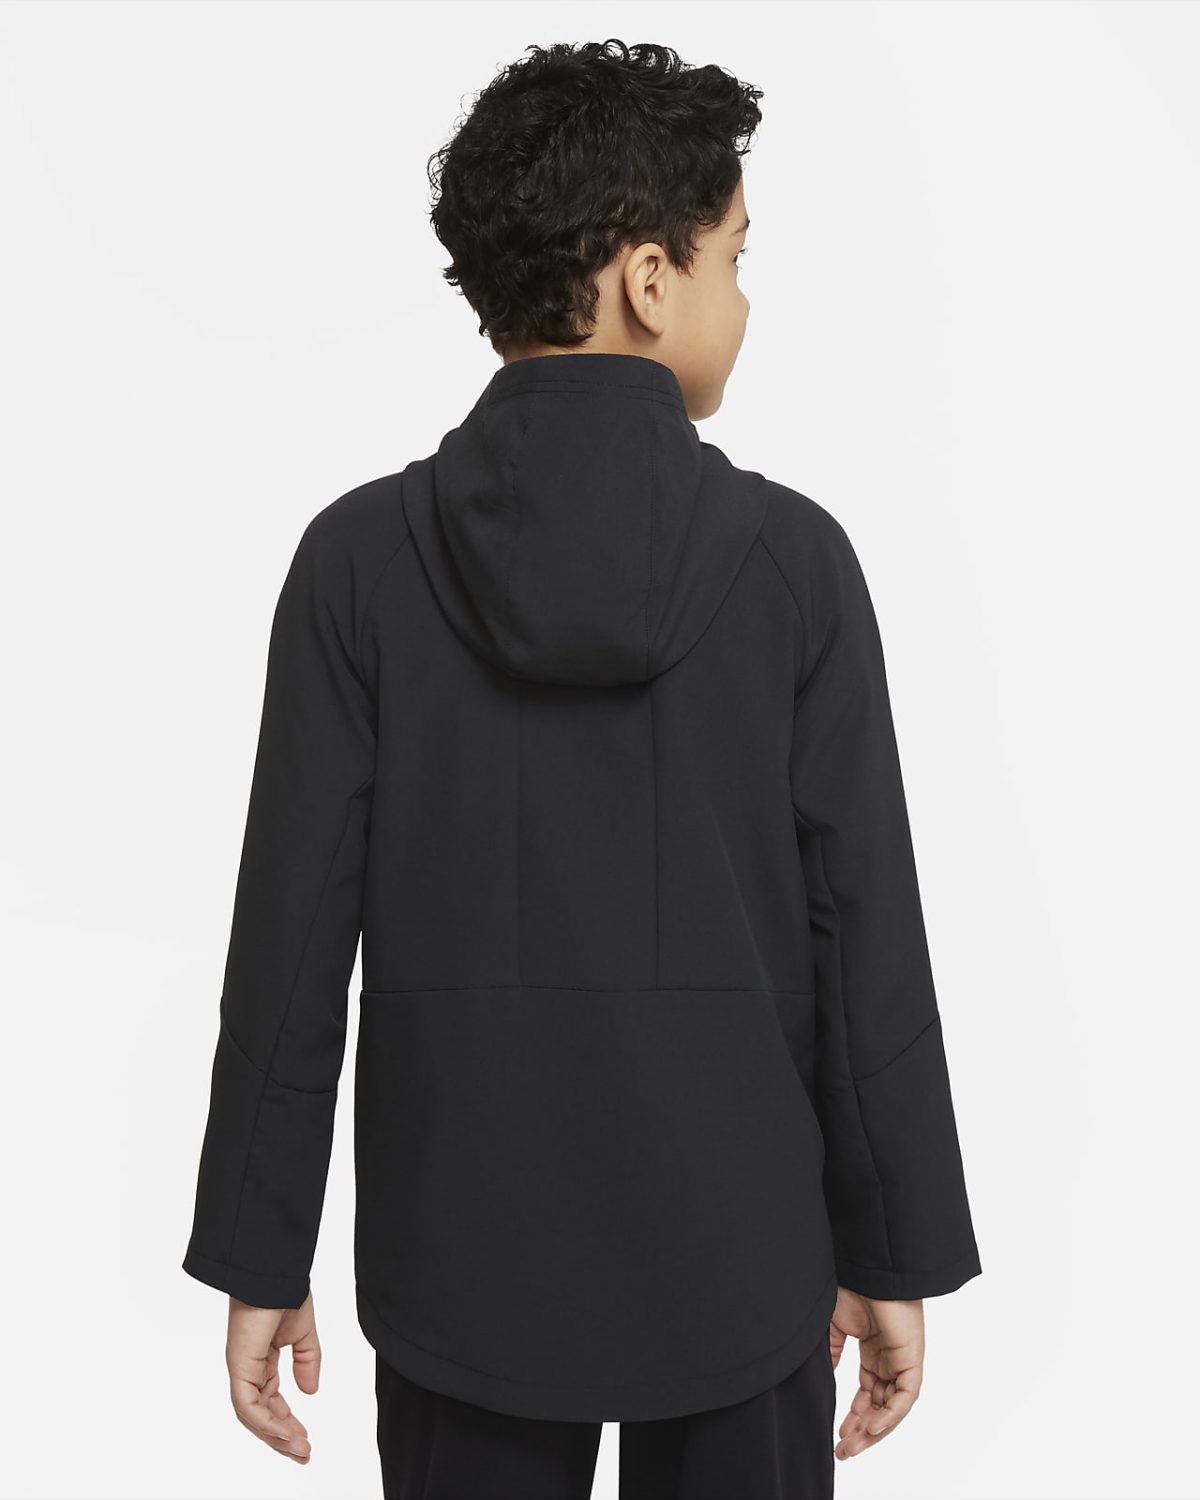 Детская куртка Nike Dri-FIT черная фотография